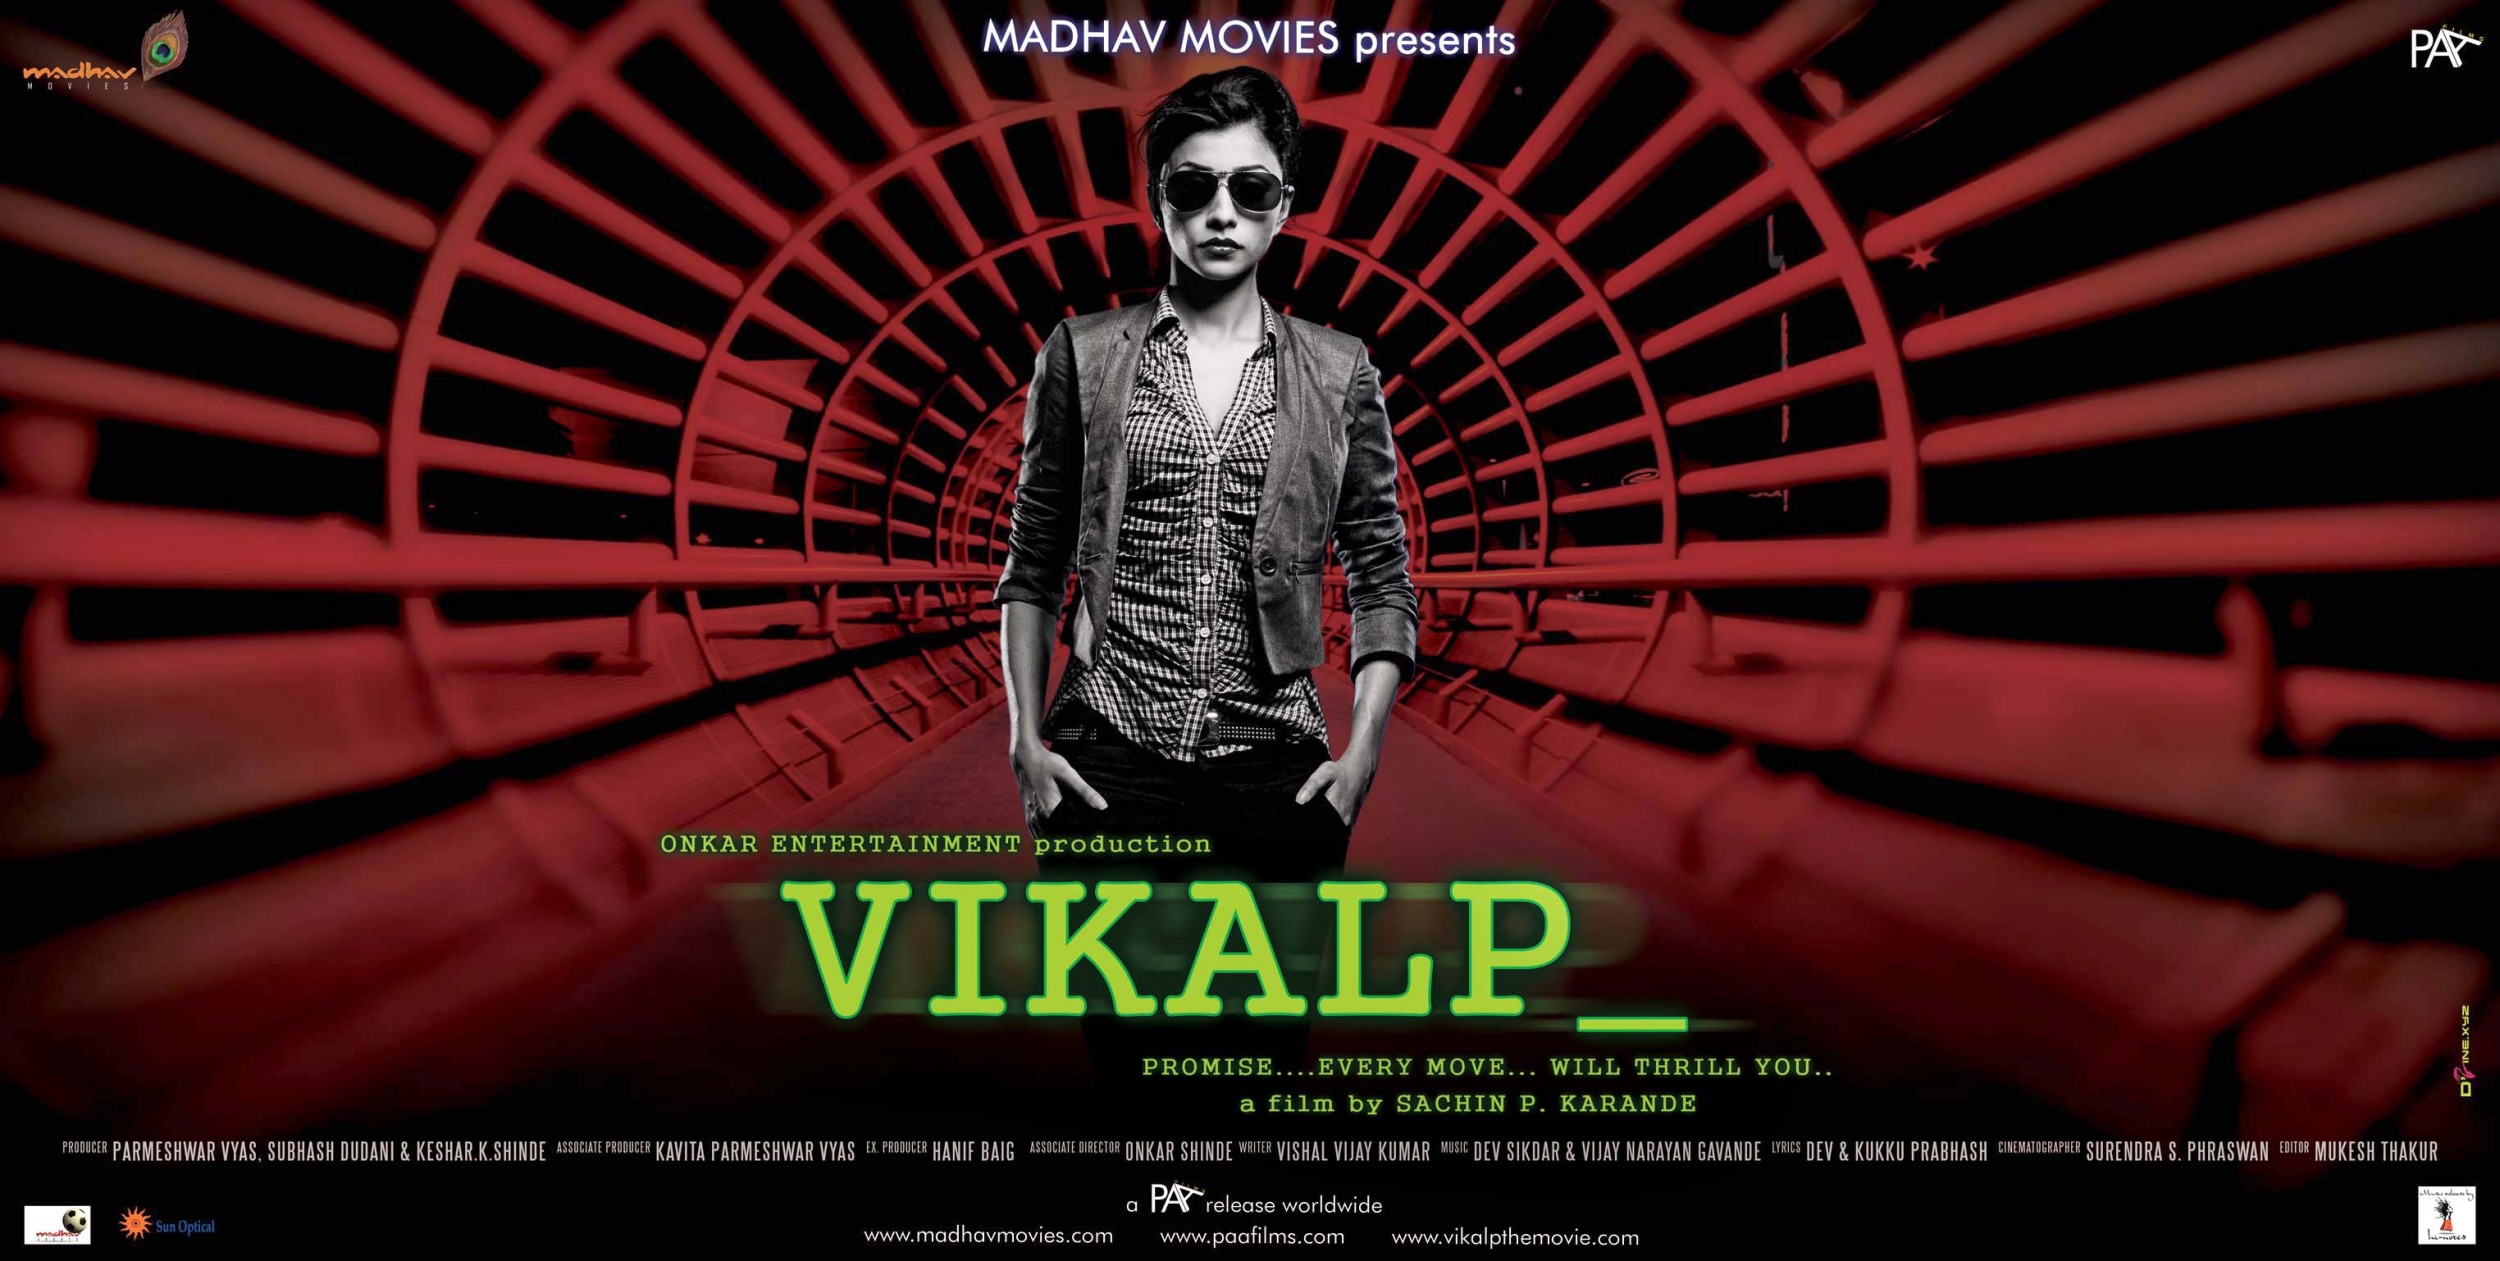 Mega Sized Movie Poster Image for Vikalp (#8 of 8)